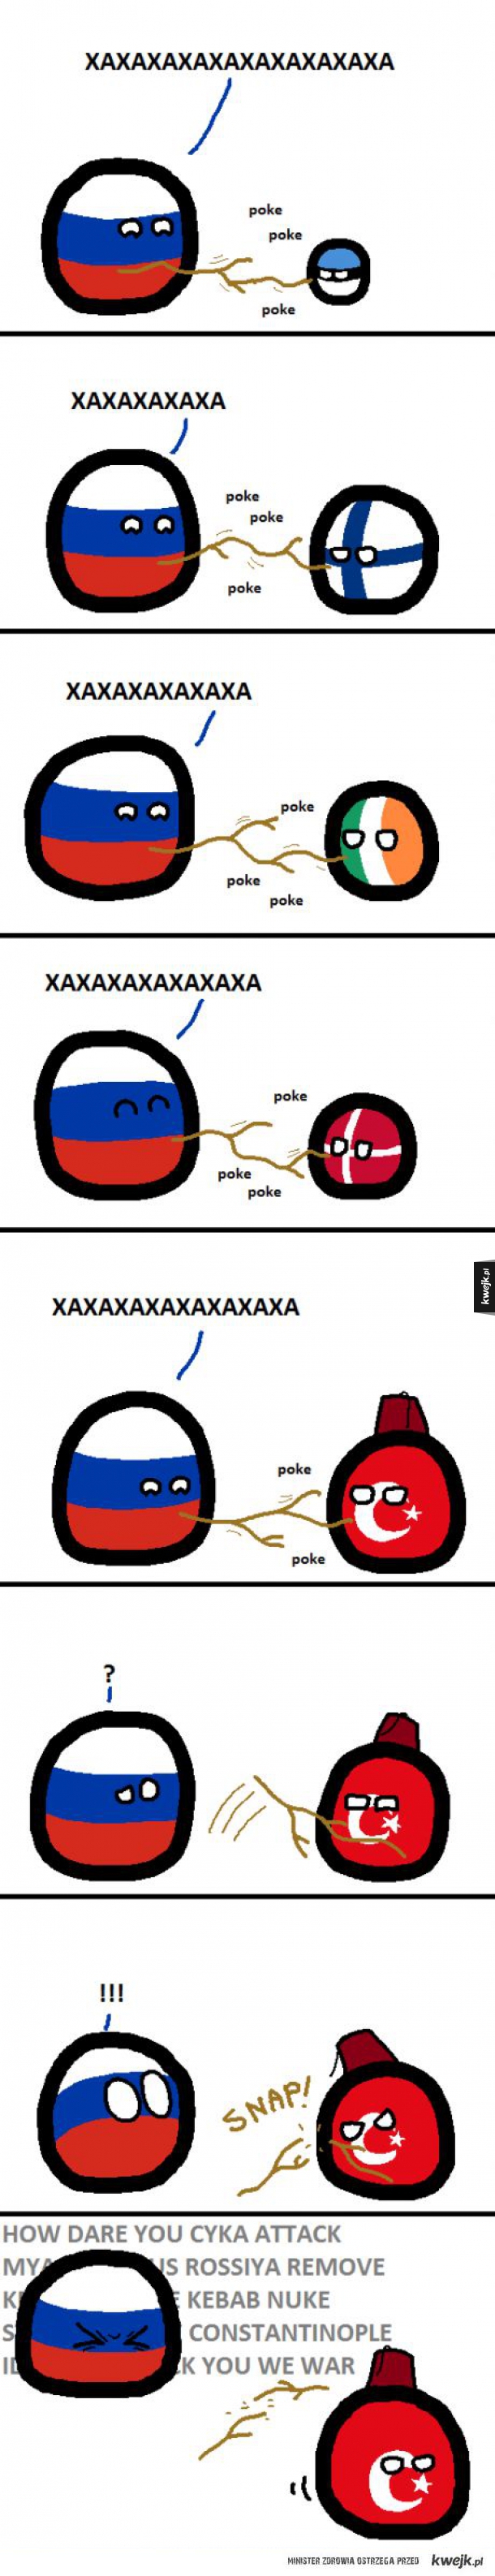 Rosja vs Turcja